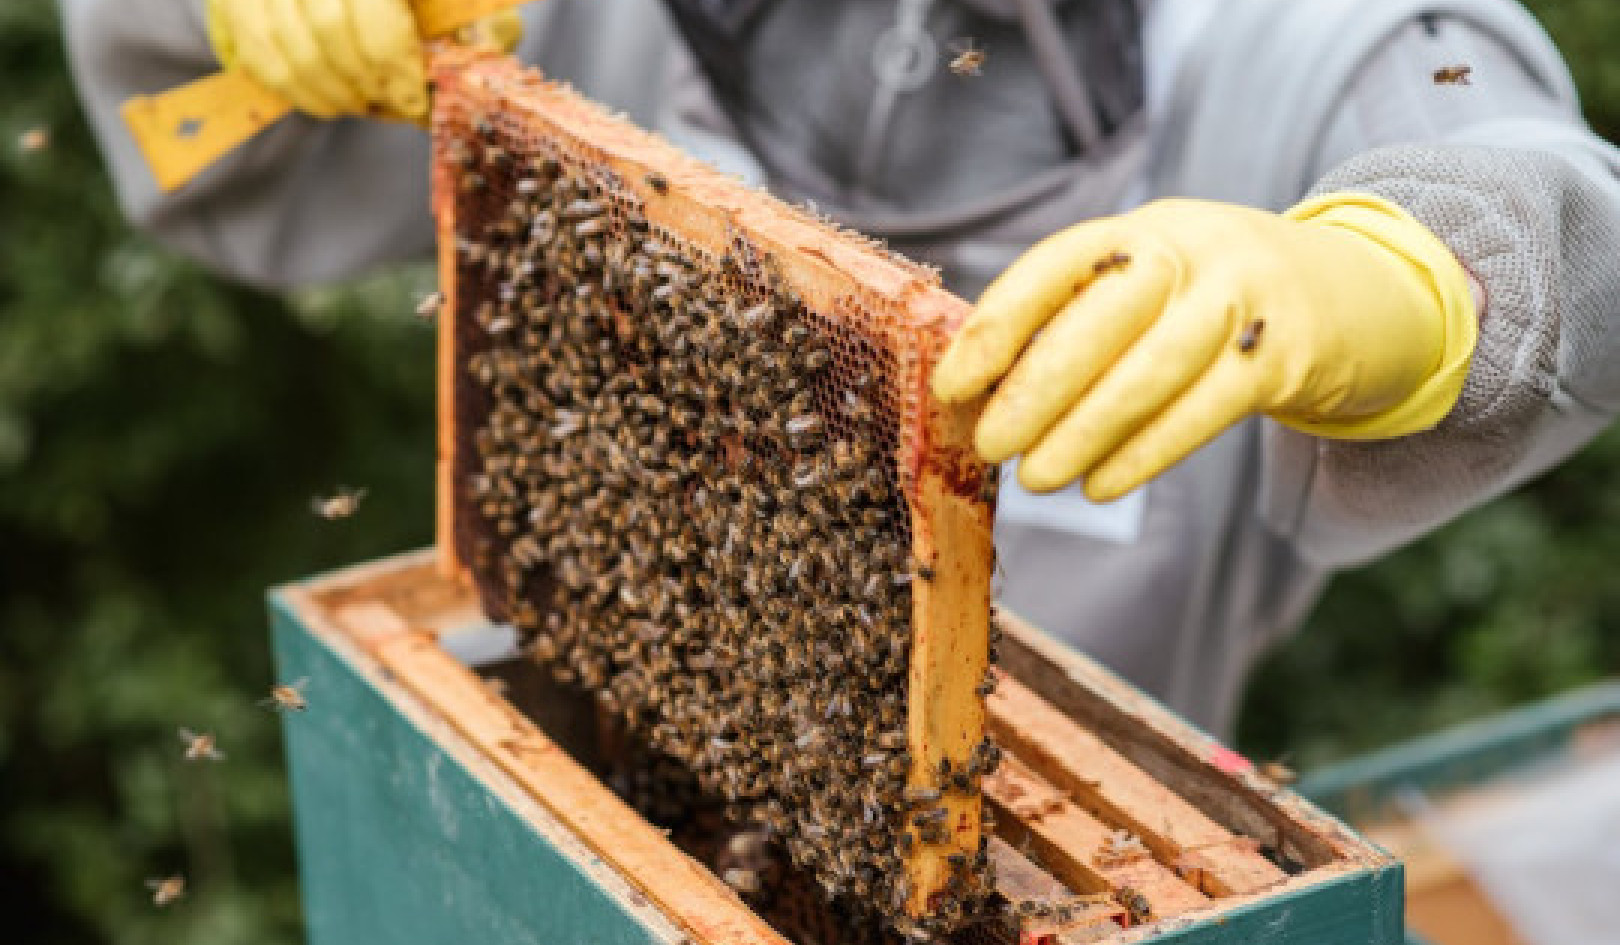 Является ли ваш мед подлинным? 10 домашних тестов, чтобы определить его чистоту